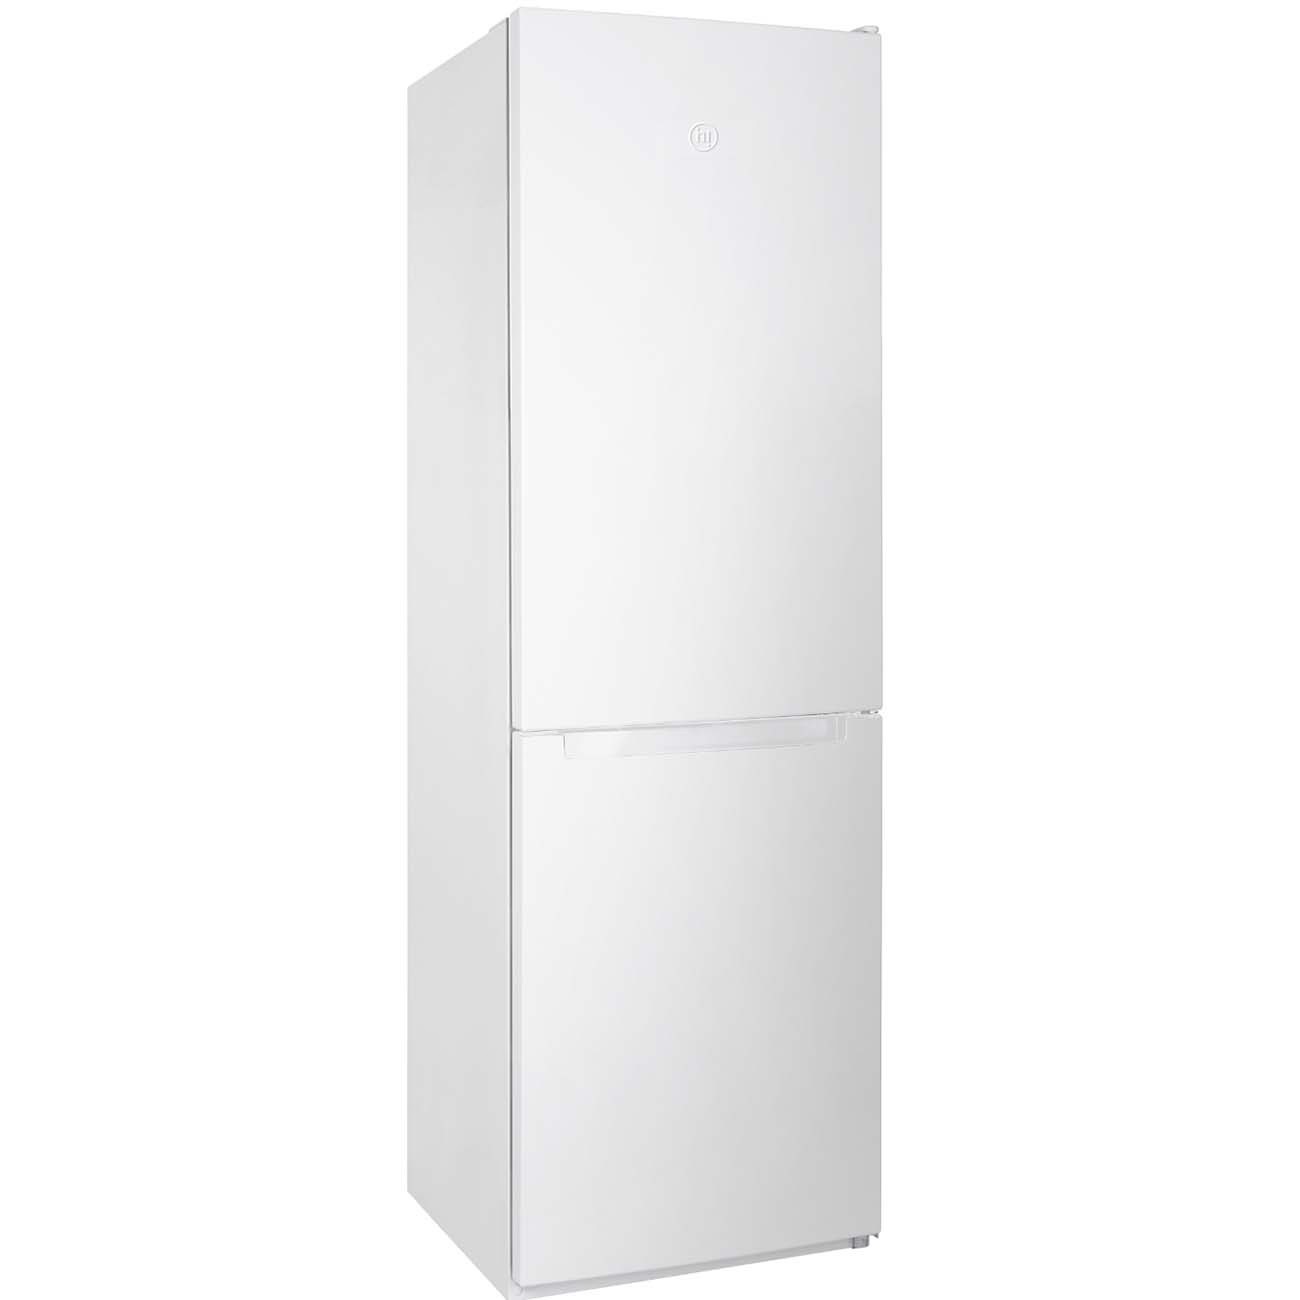 Холодильник Hi HFDN018857DW белый, купить в Москве, цены в интернет-магазинах на Мегамаркет